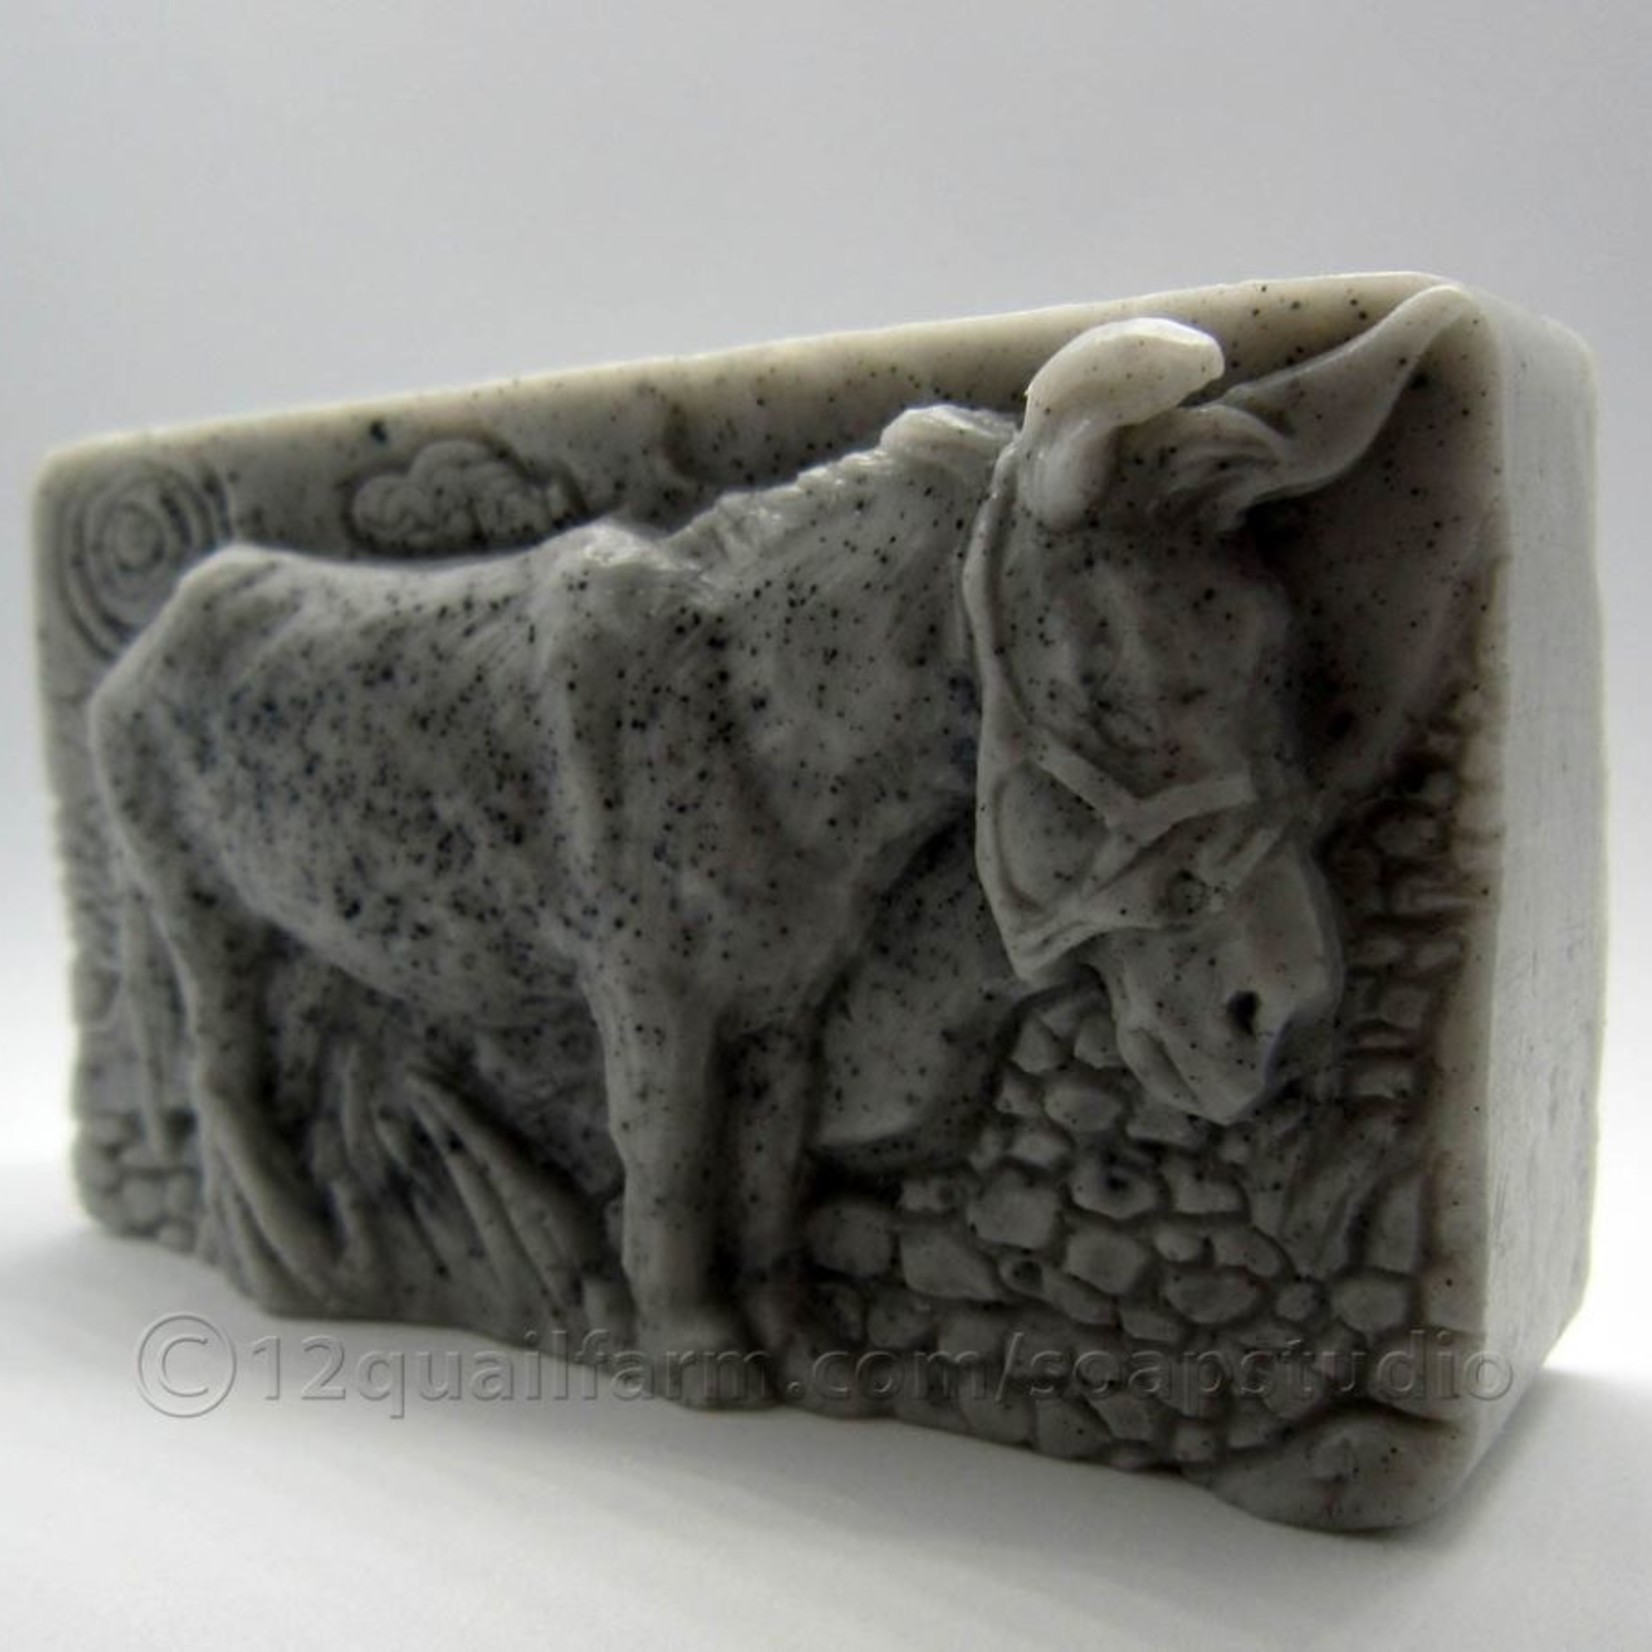 12 Quail Farm Soap Studio Donkey Soap (Grey)